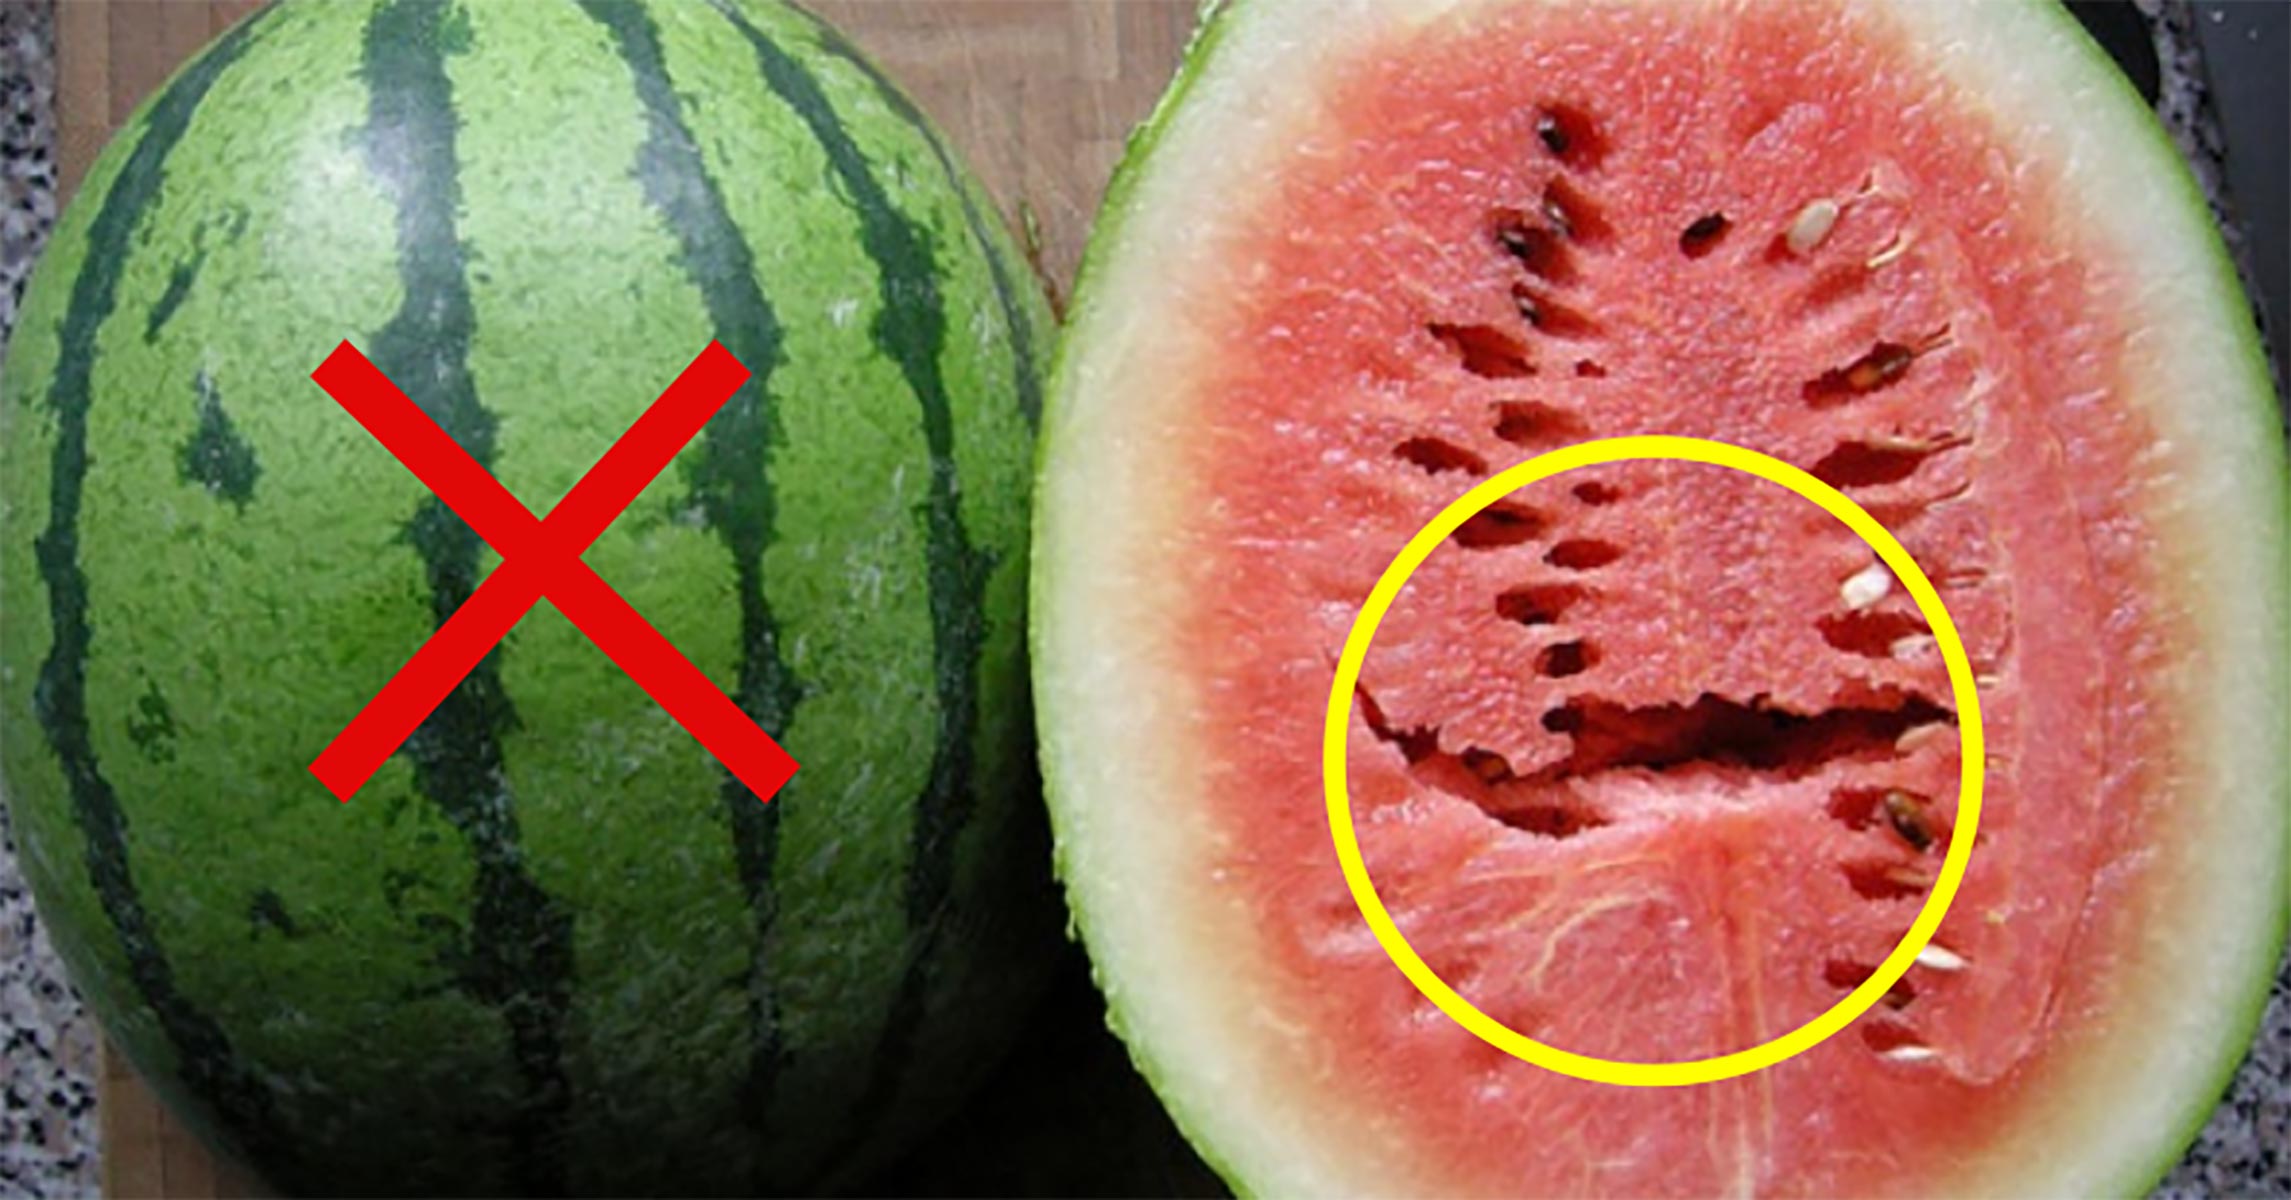 Αν δείτε σχισμές όταν ανοίγετε το καρπούζι, μην το φάτε!